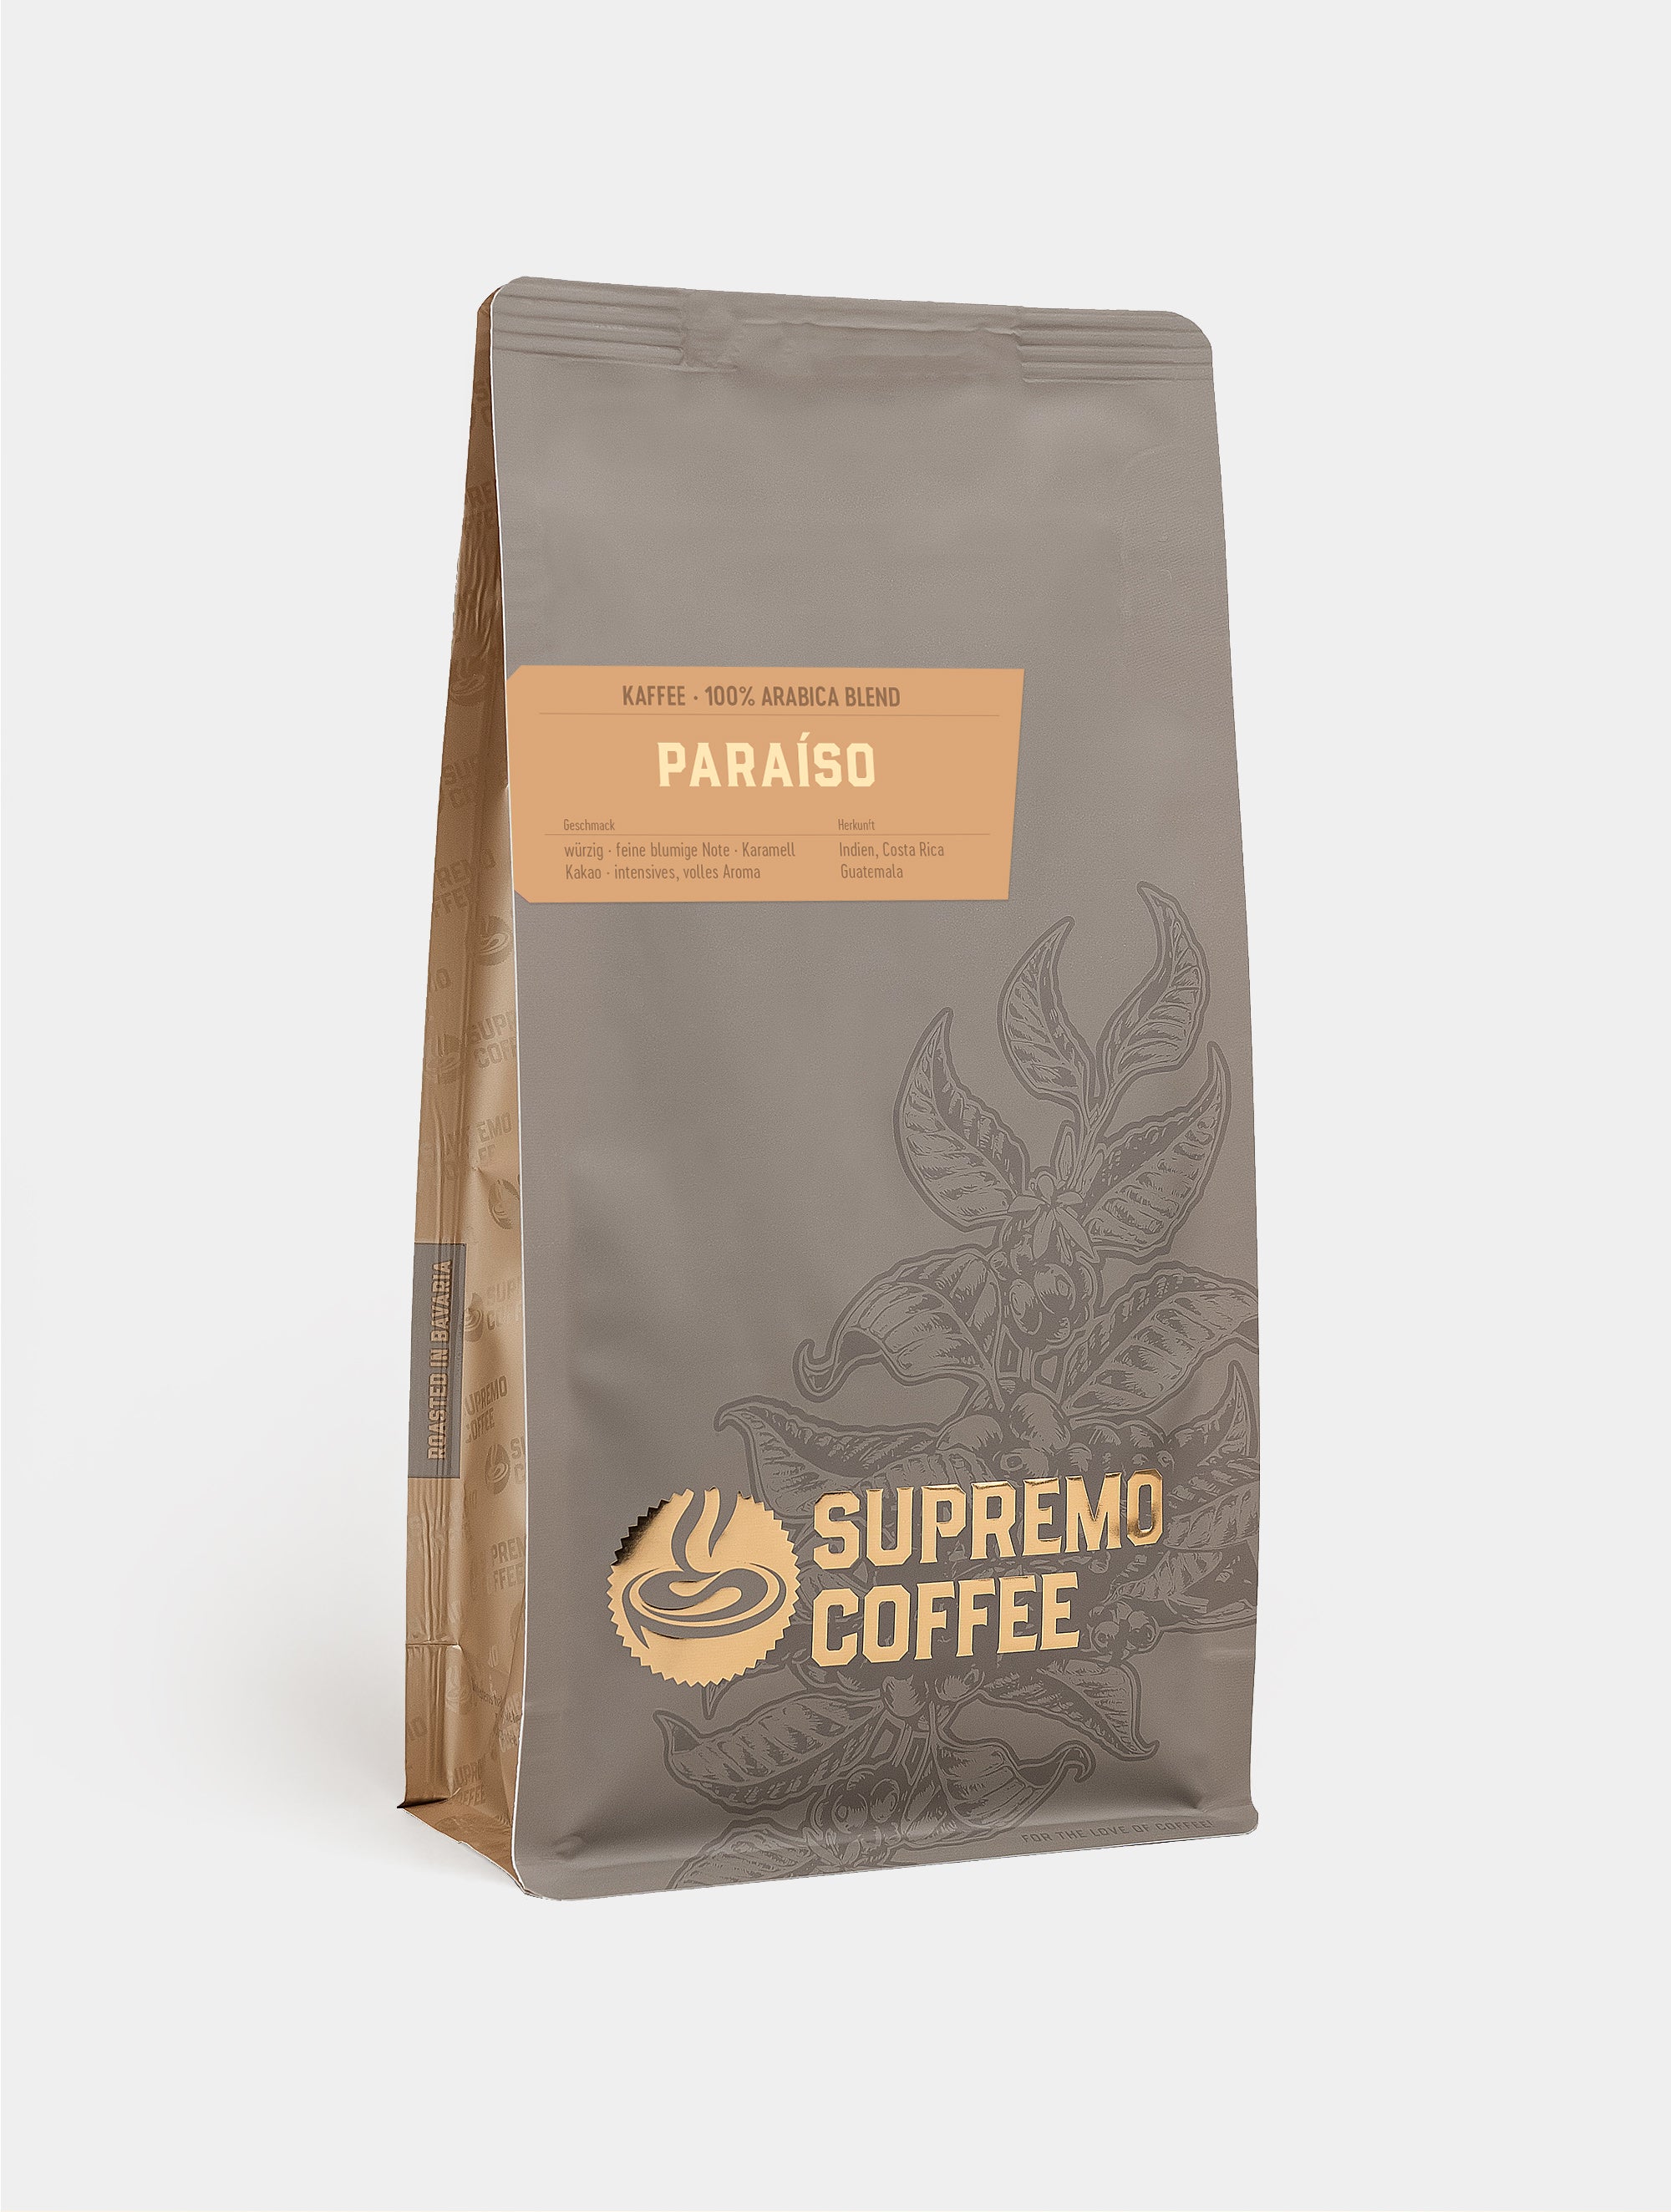 Paraiso, 100% Arabica Blend | SUPREMO Coffee